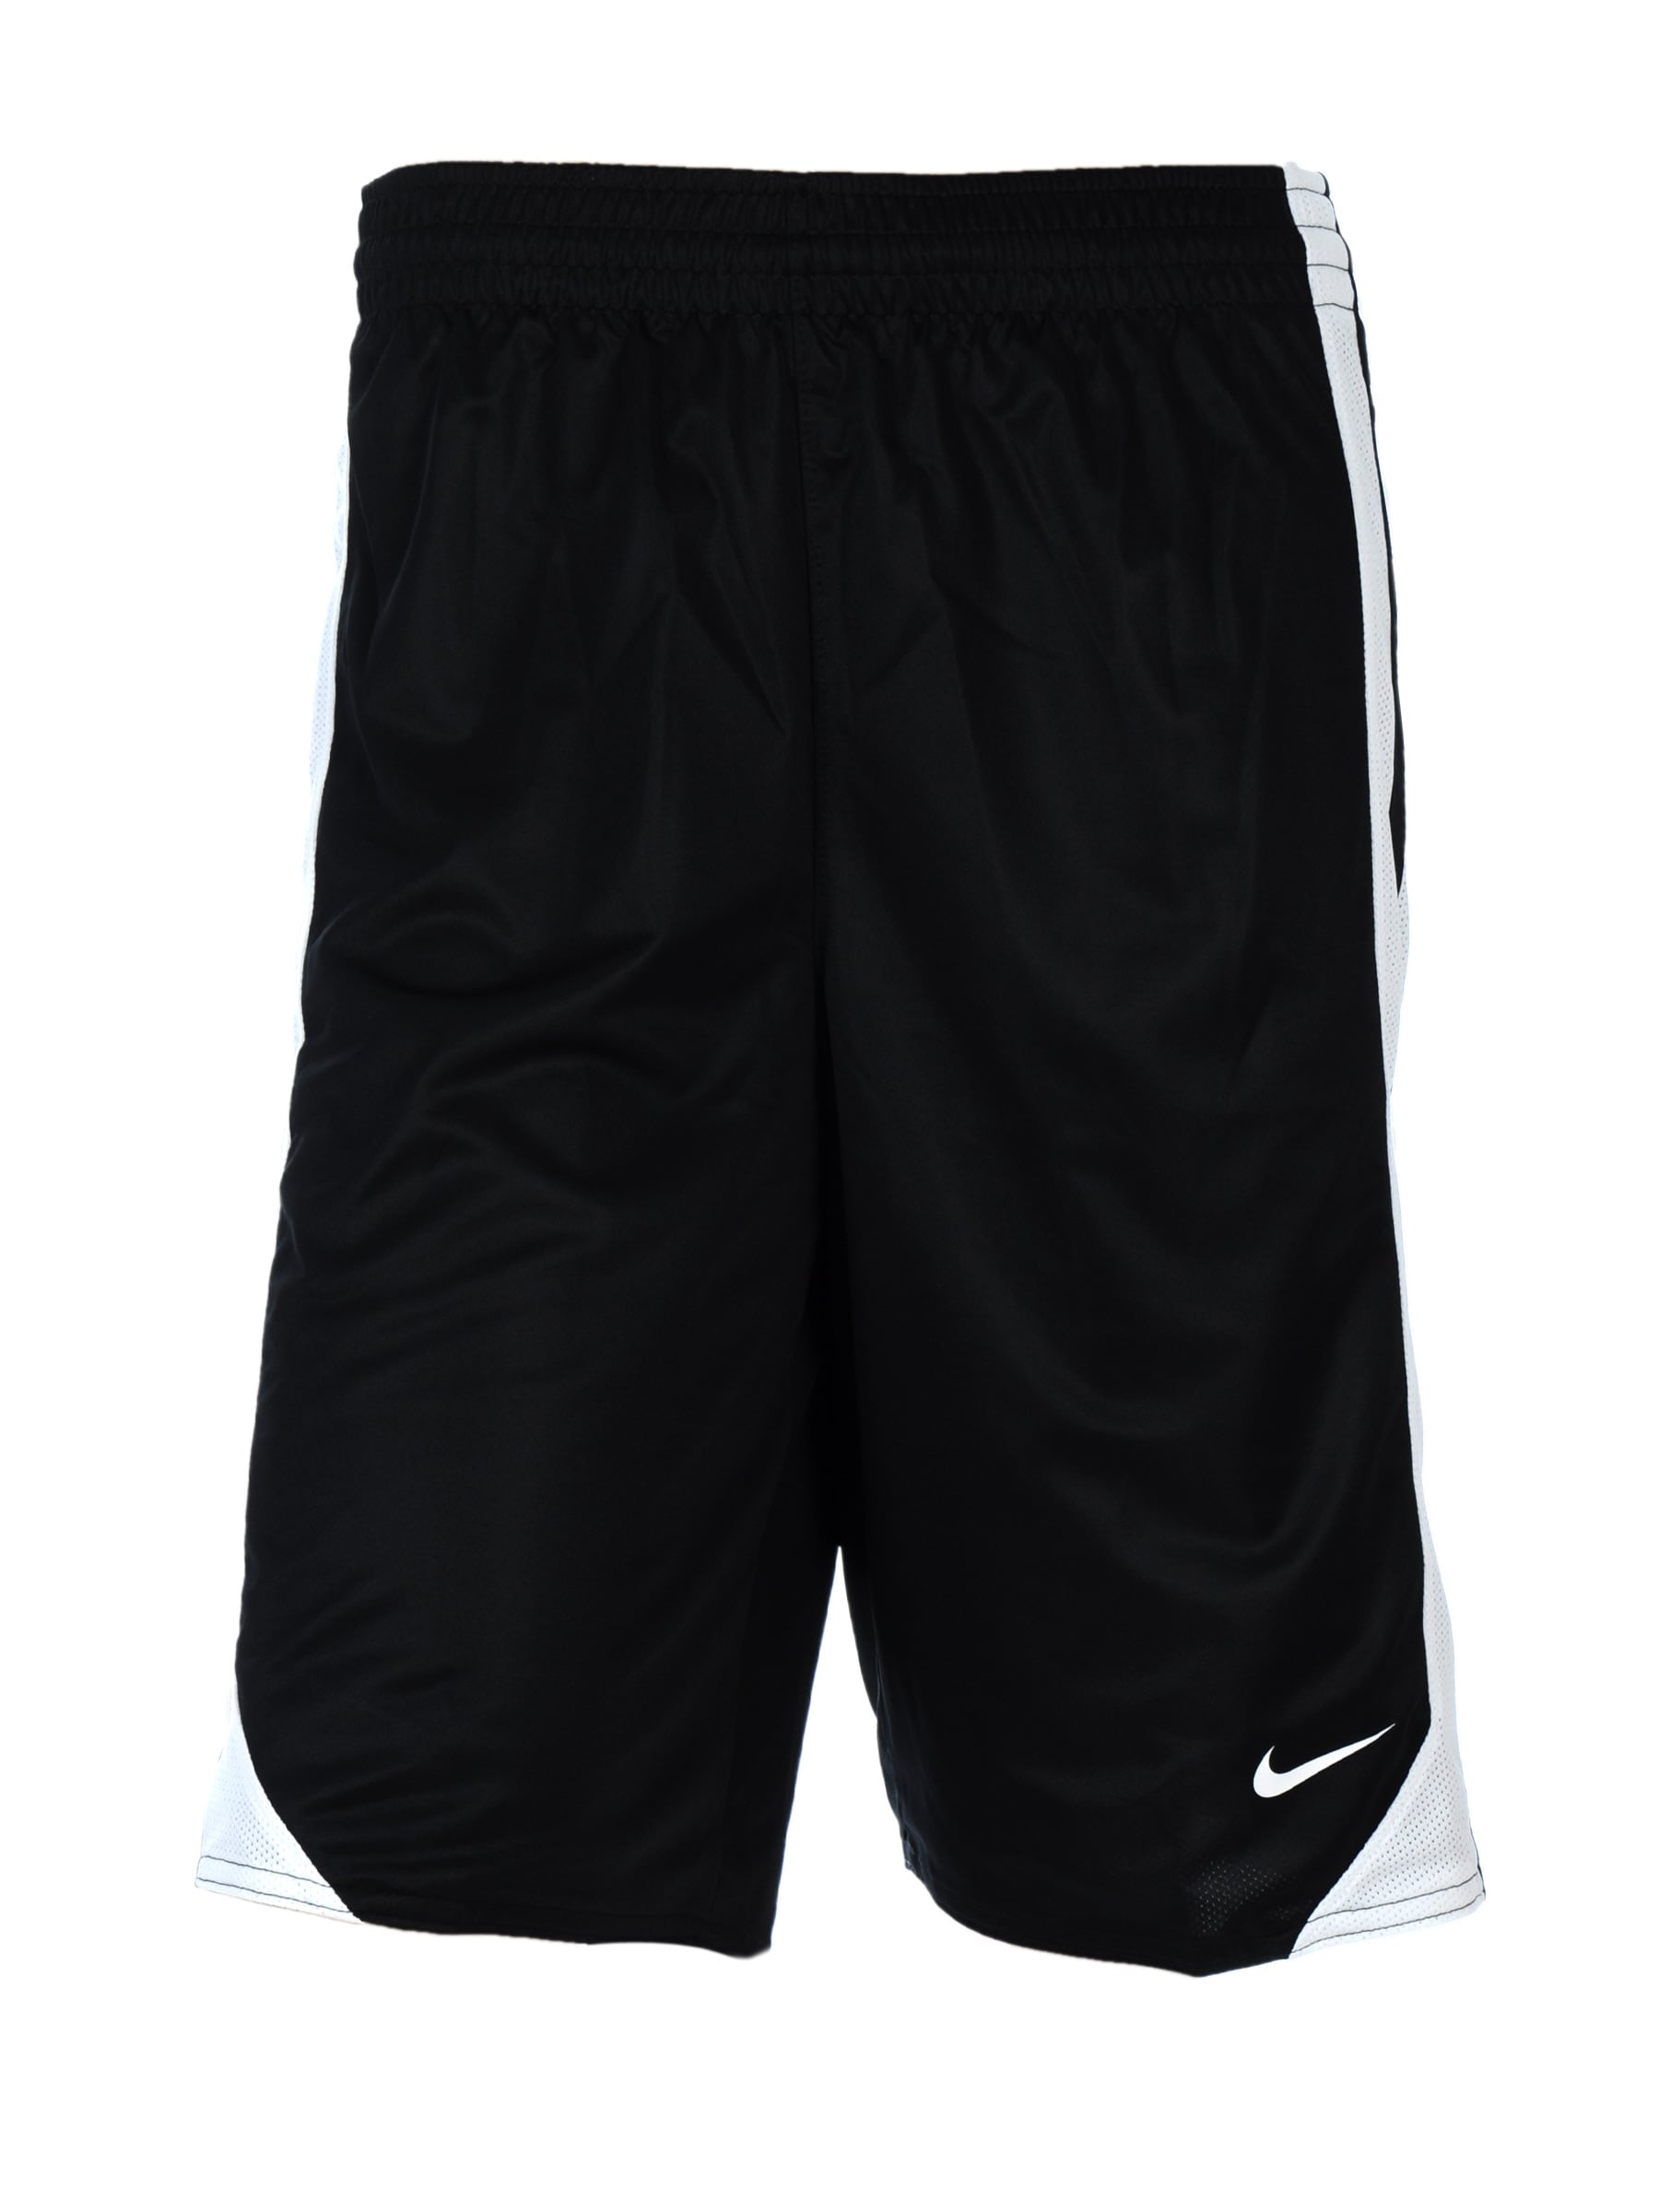 Nike Men Black & White Reversible Shorts